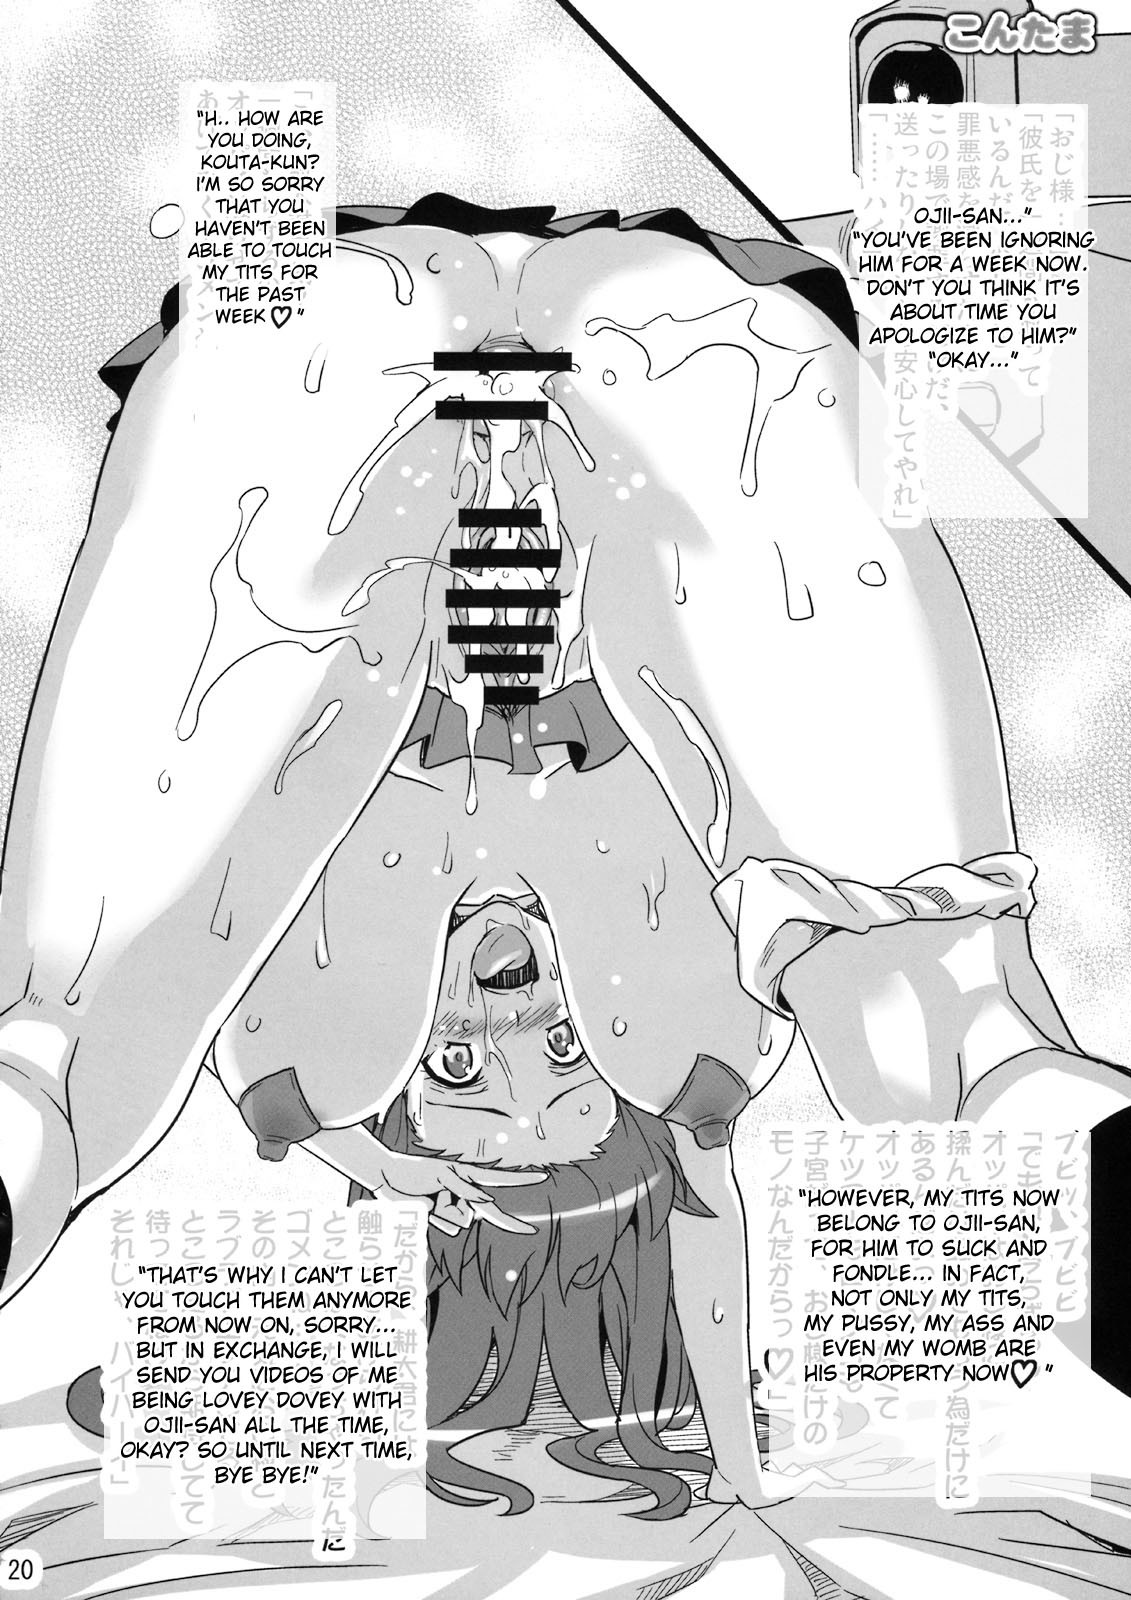 Kontama Plus arcana heart 18 hentai manga